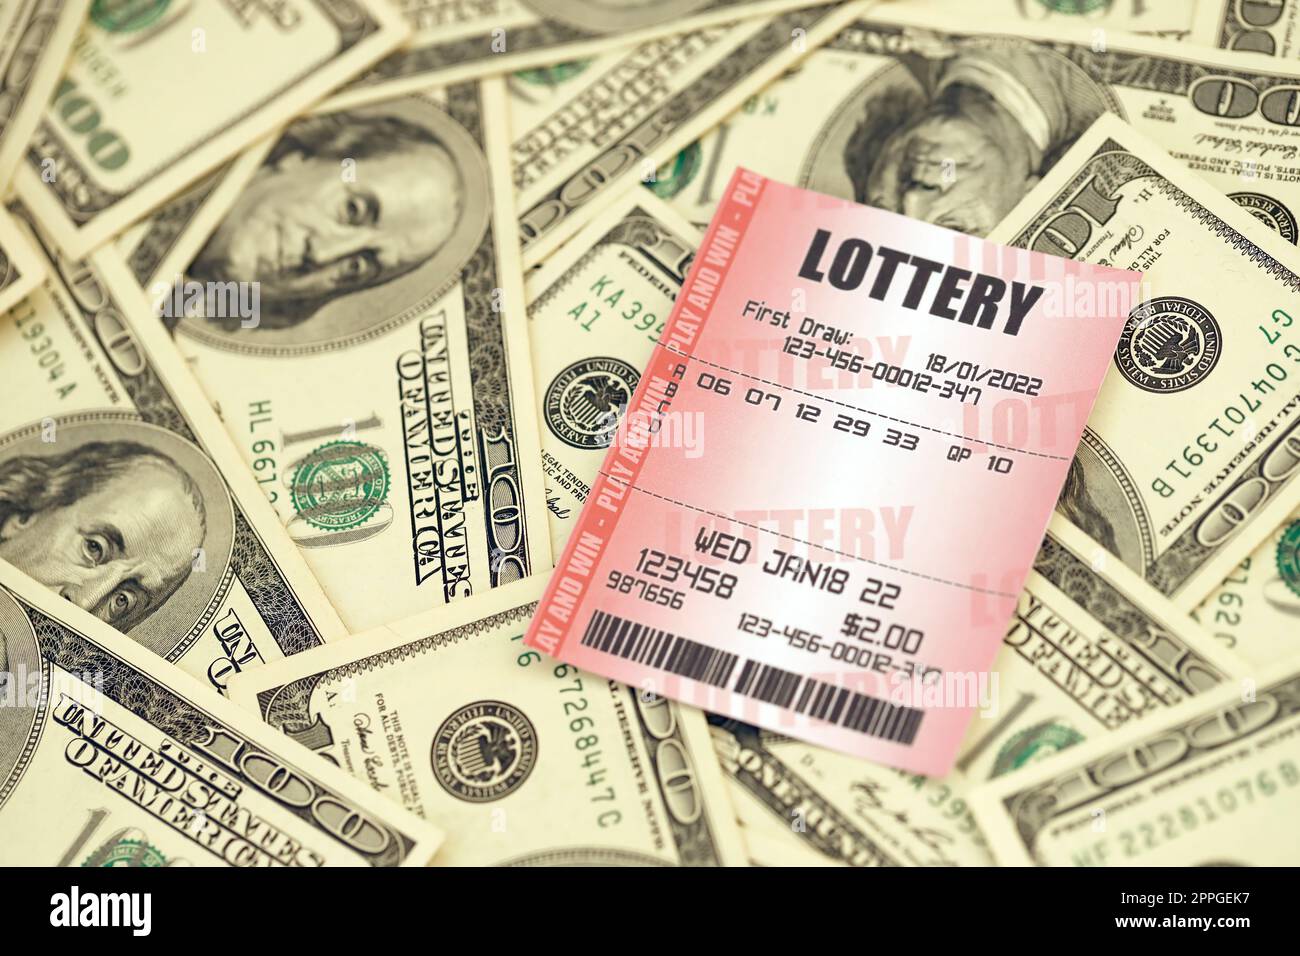 Billet de loterie rouge se trouve sur une grande quantité de billets de cent dollars. Concept de jeu de loterie ou dépendance au jeu. Gros plan Banque D'Images